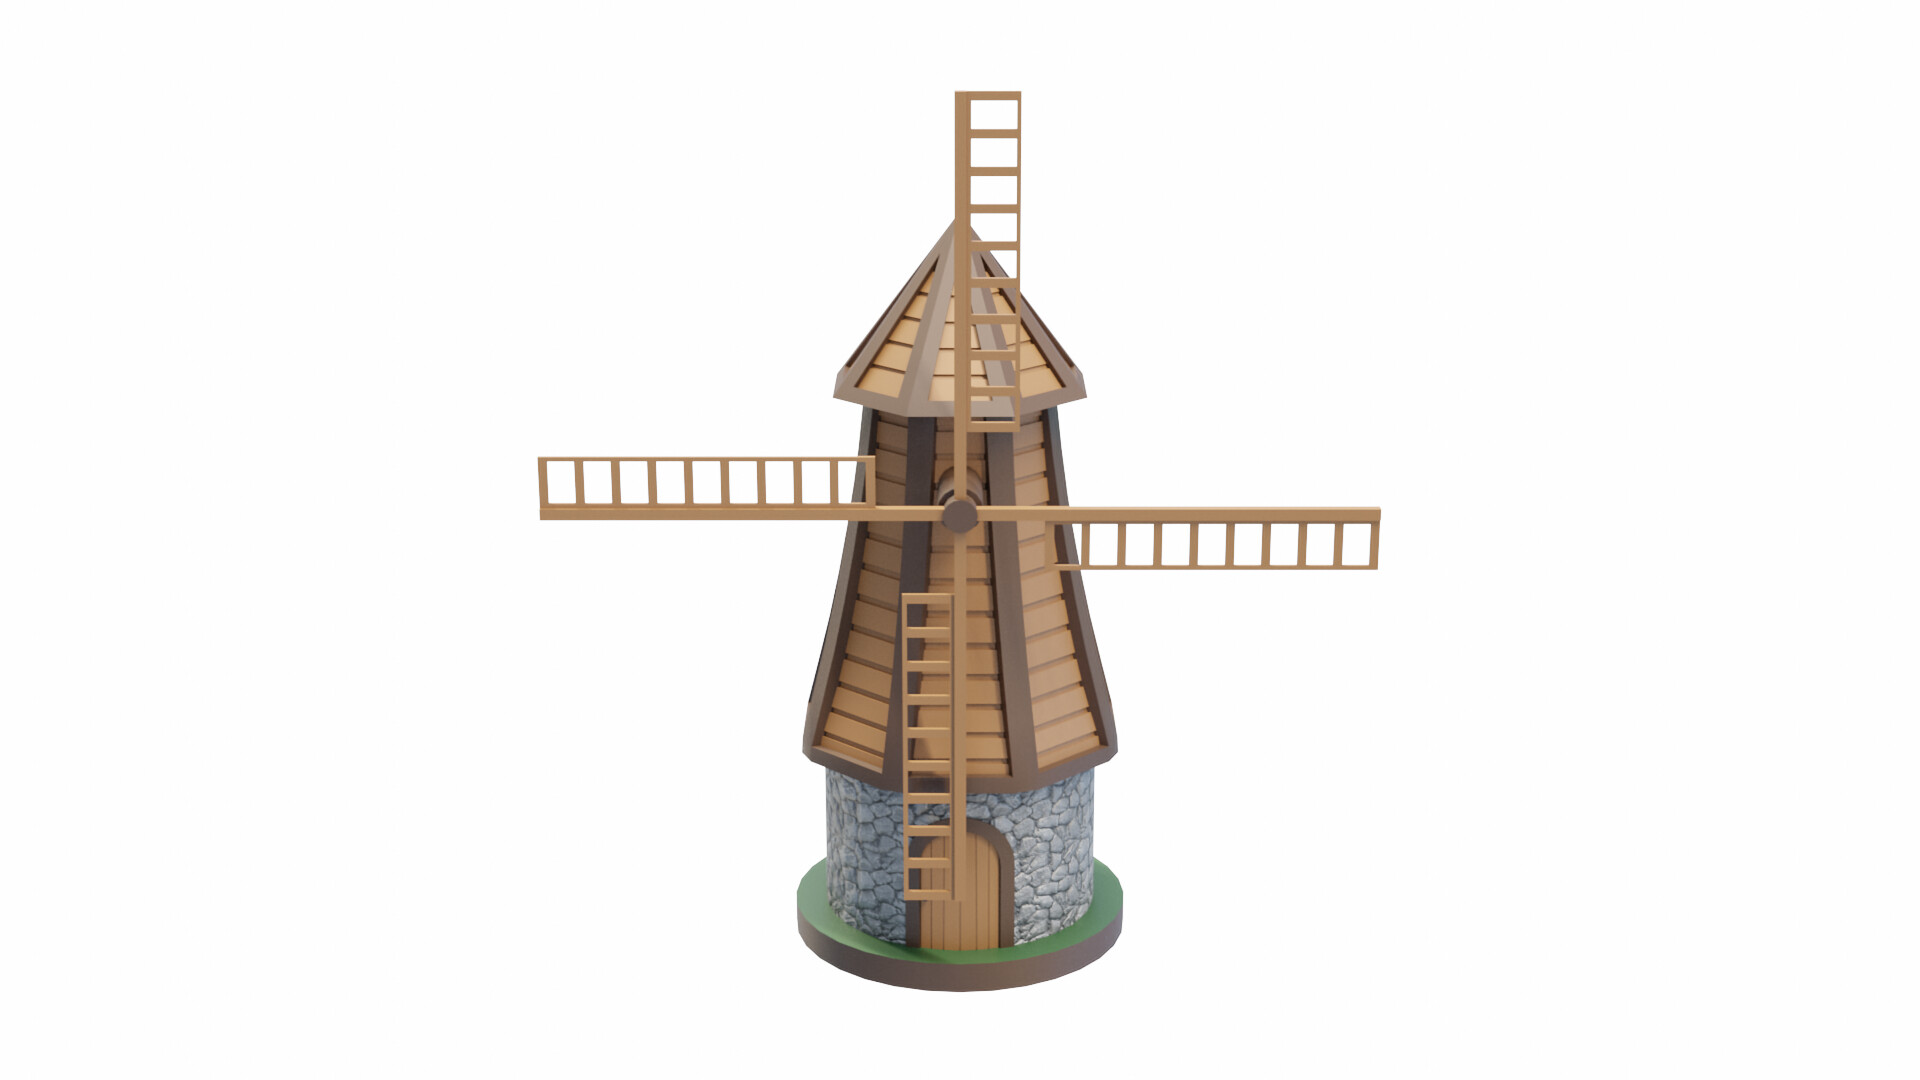 https://cdnb.artstation.com/p/assets/images/images/052/668/059/large/cameron-schmaltz-windmill-2-render-2.jpg?1660372305